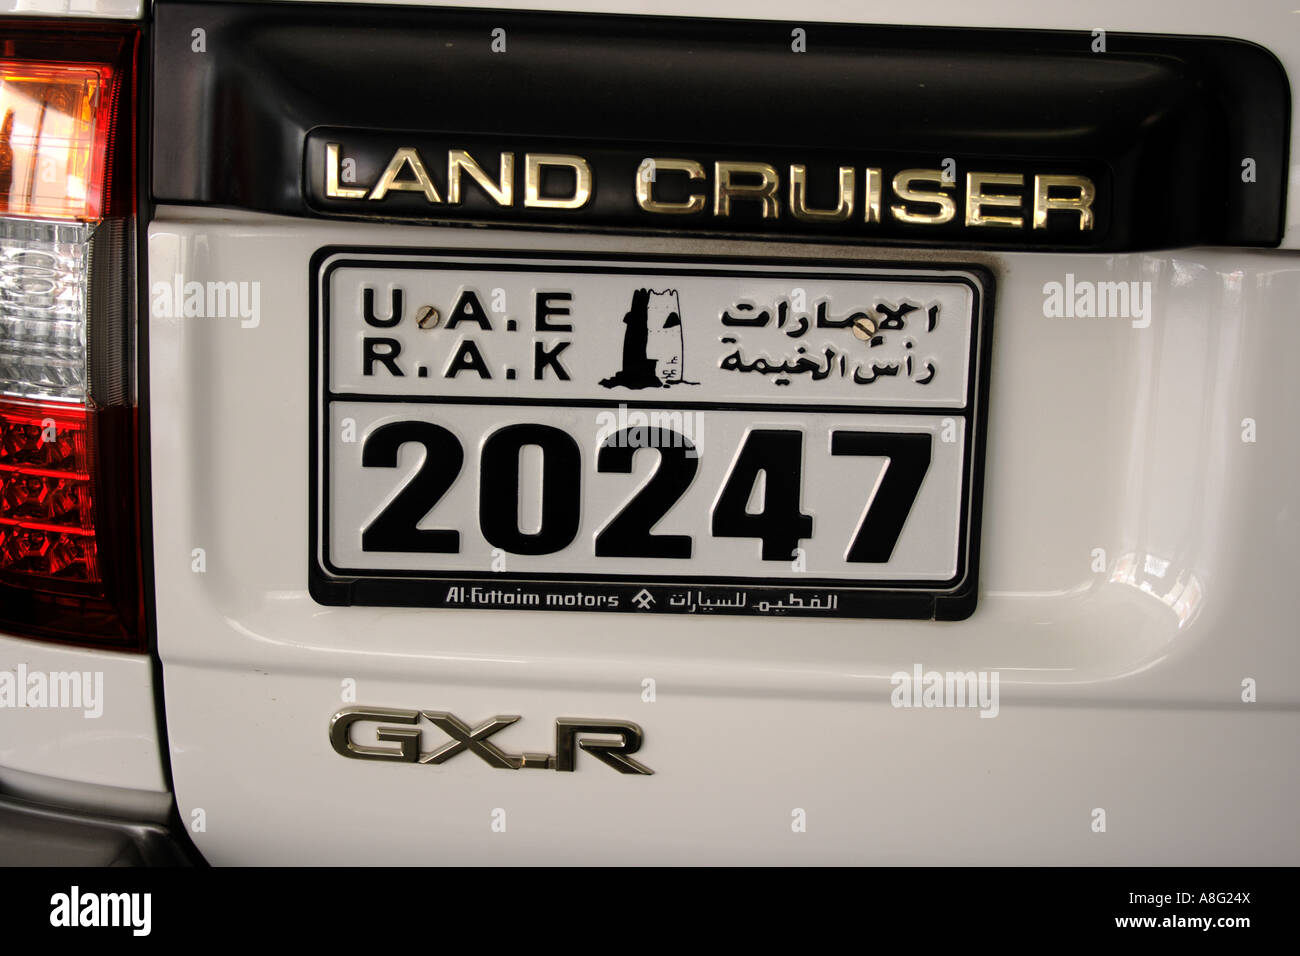 Dubai RAK auto piastra di licenza su offroad Land Cruiser, Emirati Arabi Uniti. Foto di Willy Matheisl Foto Stock